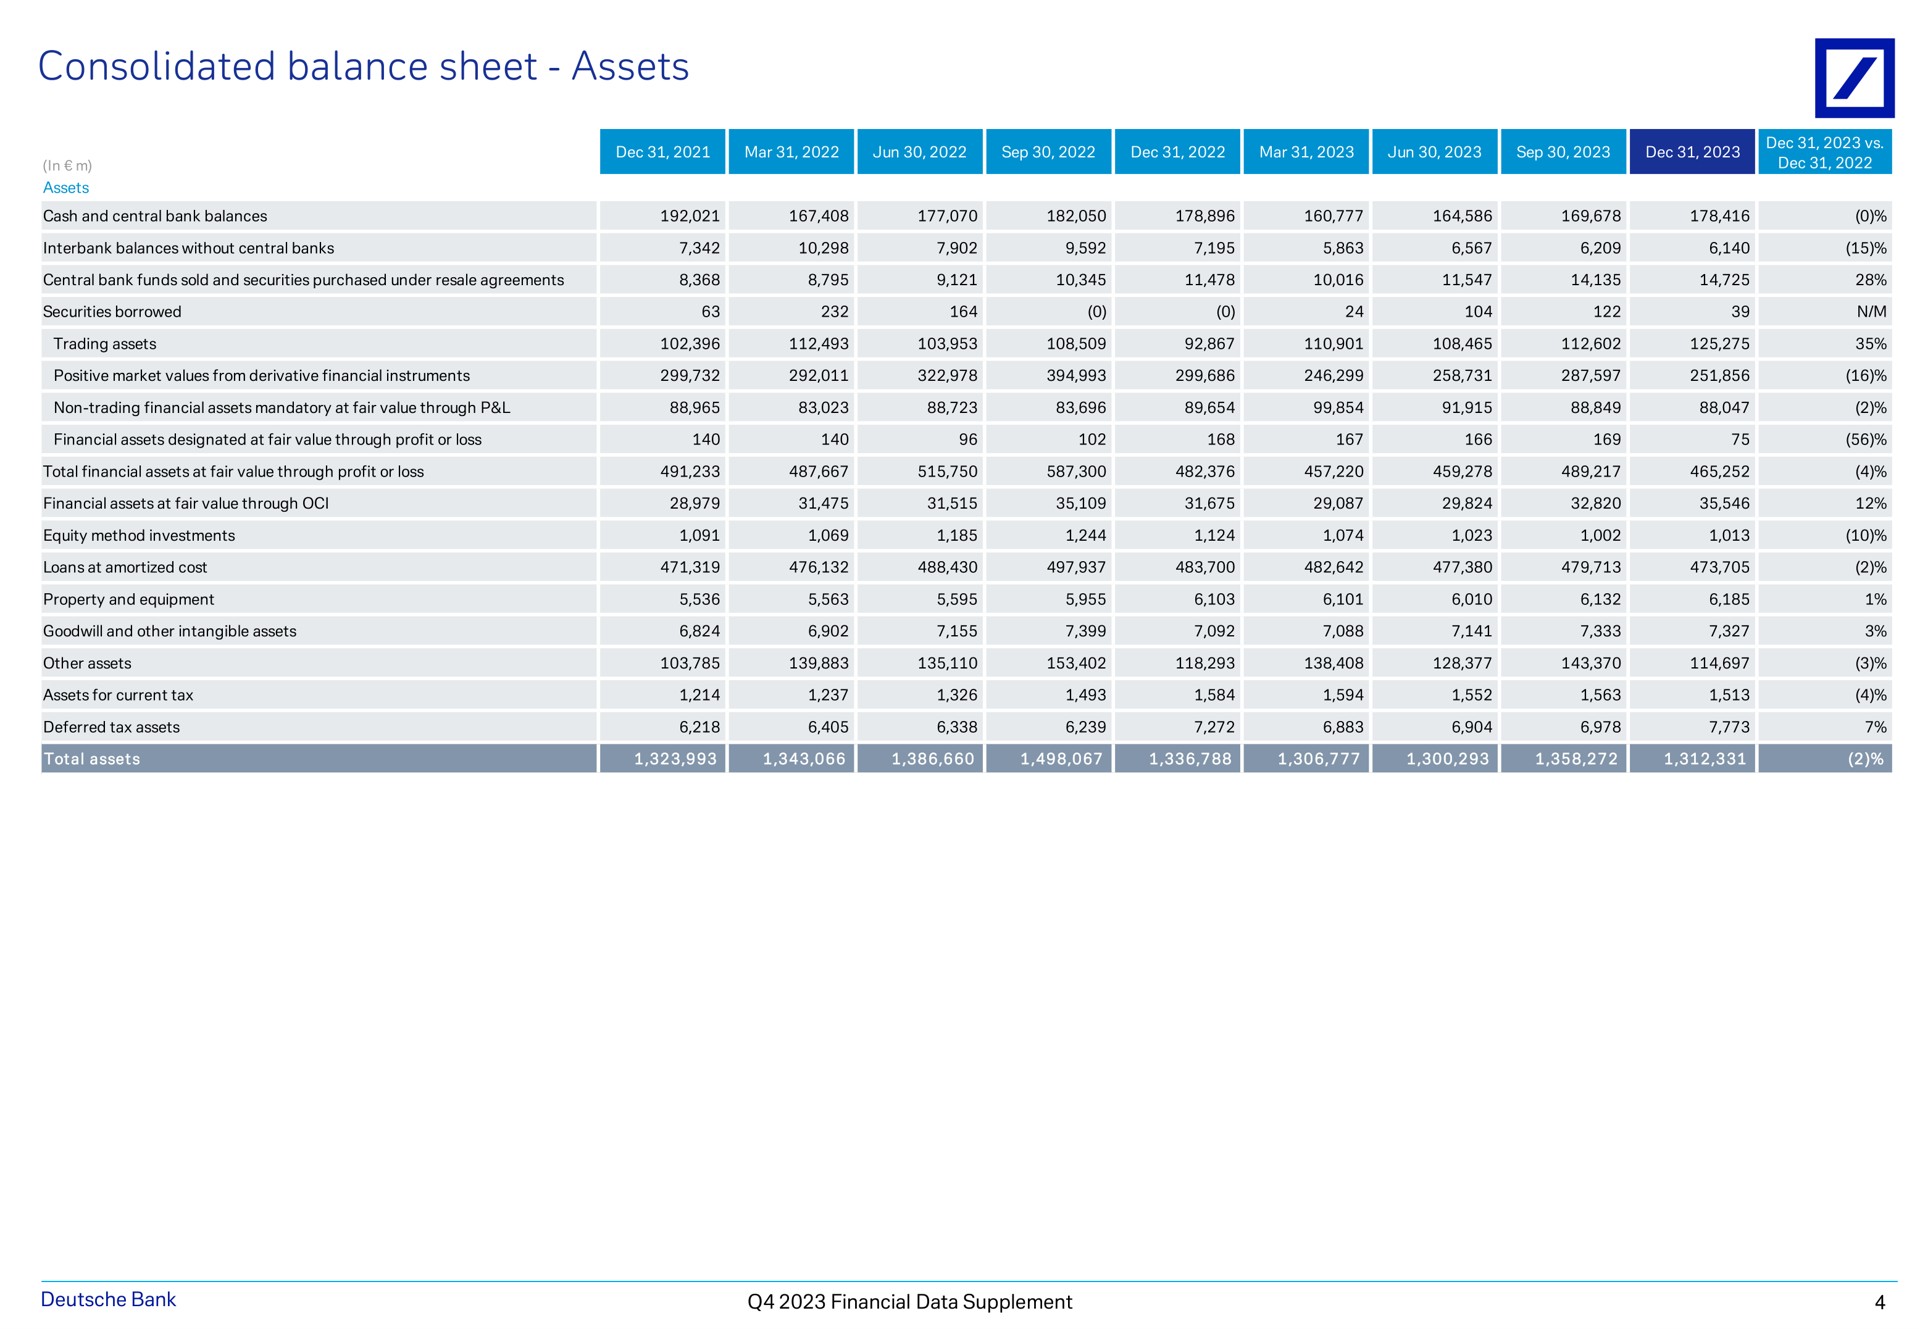 consolidated balance sheet assets bank financial data supplement | Deutsche Bank